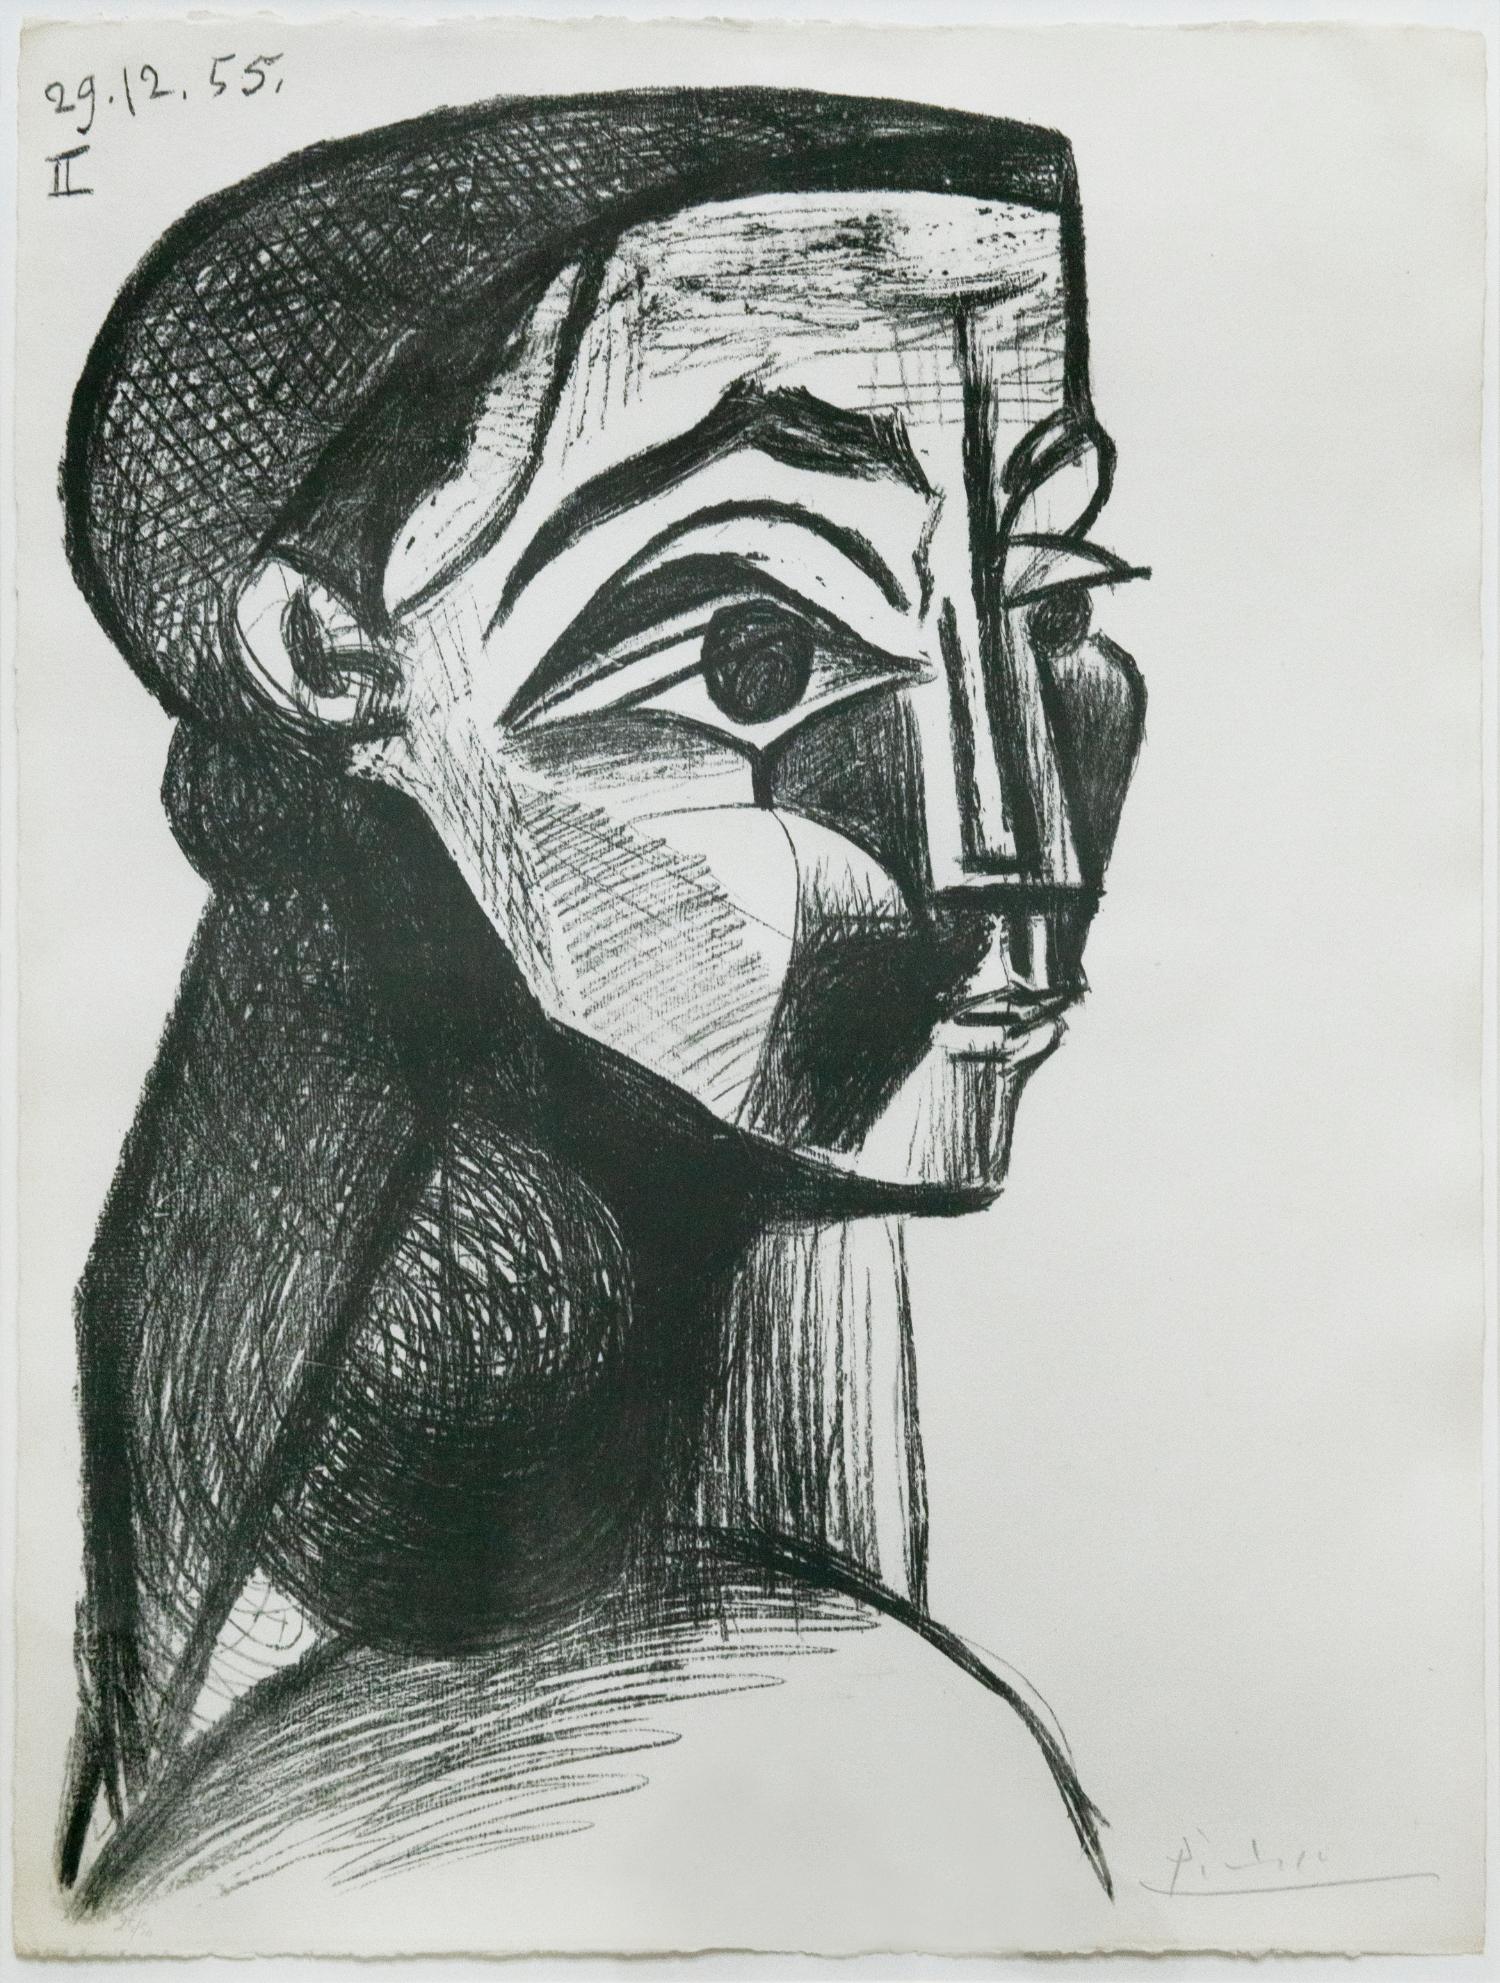 Abstract Print Pablo Picasso - Portrait de Femme II